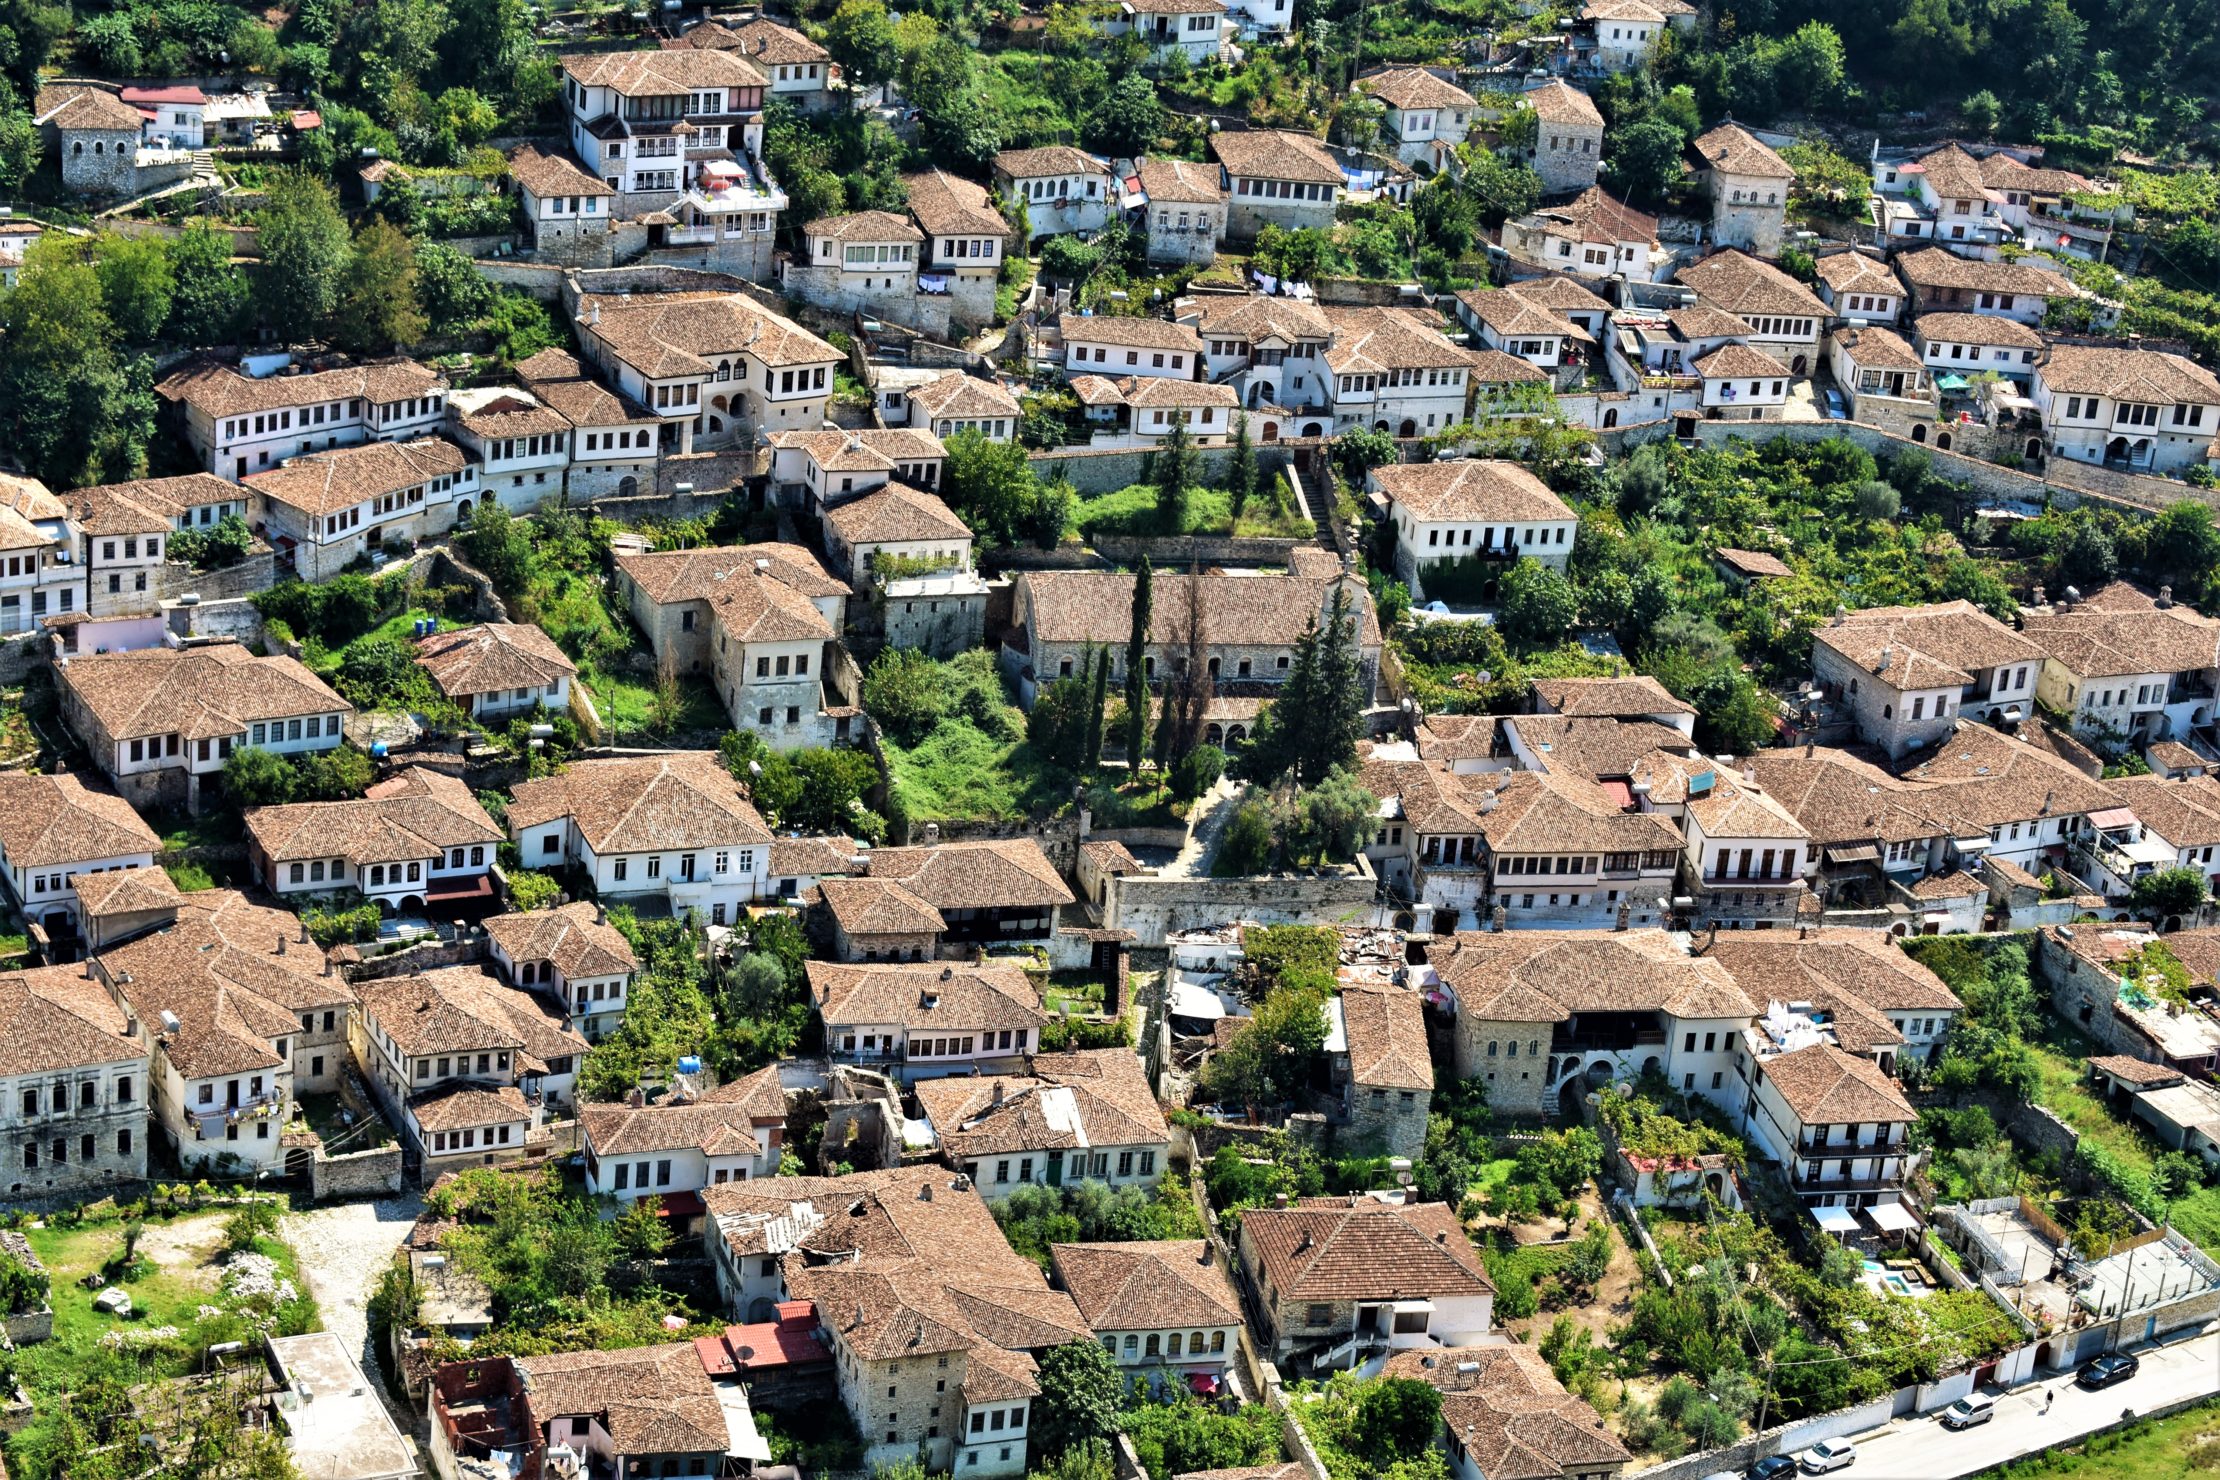 Arquitectura otomana en el Barrio de Berat